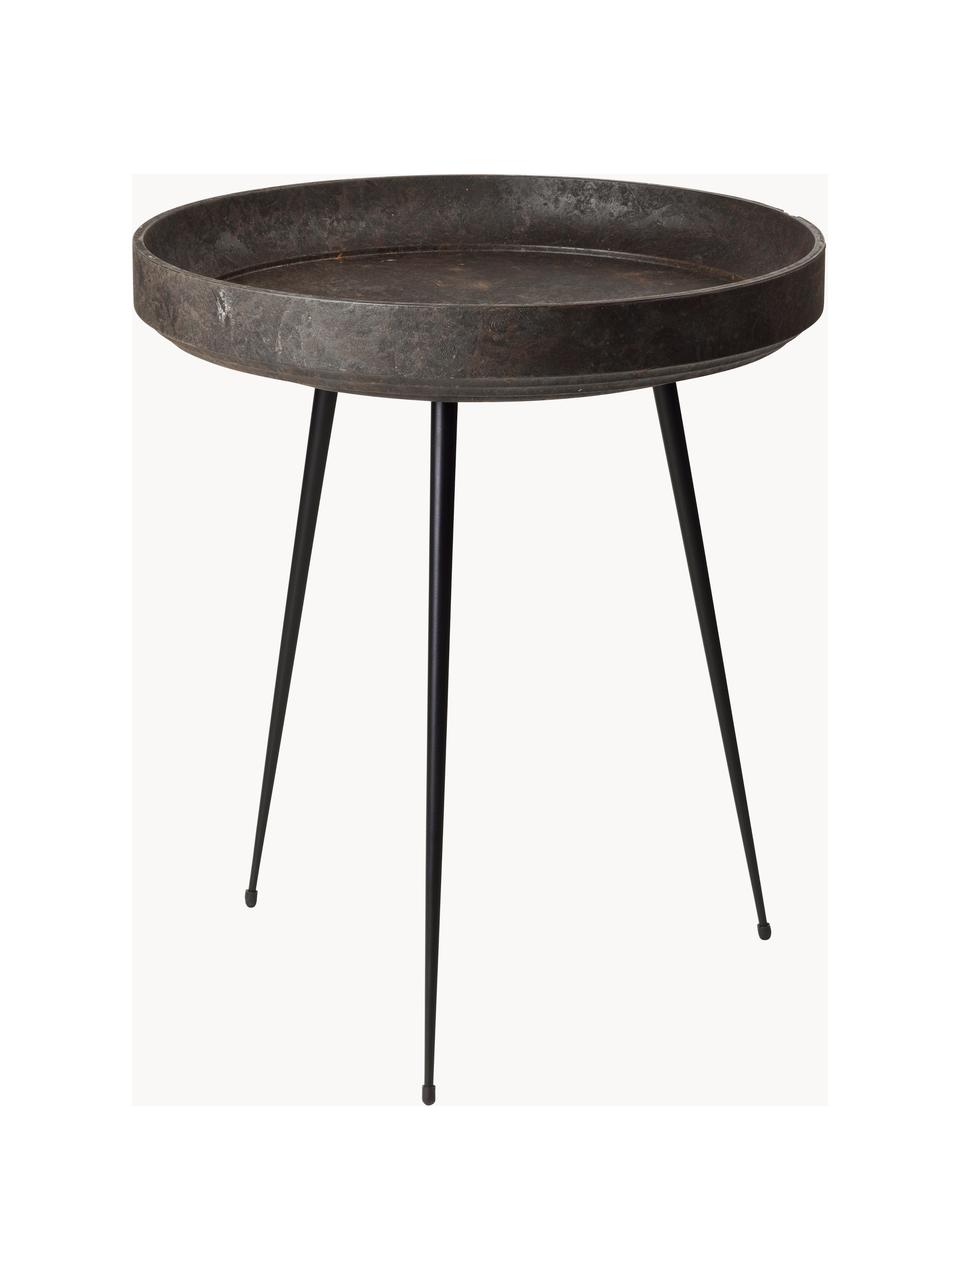 Kulatý odkládací stolek z dubového dřeva Bowl, ručně vyrobený, Dubové dřevo, tmavě hnědě lakované, Ø 46 cm, V 55 cm